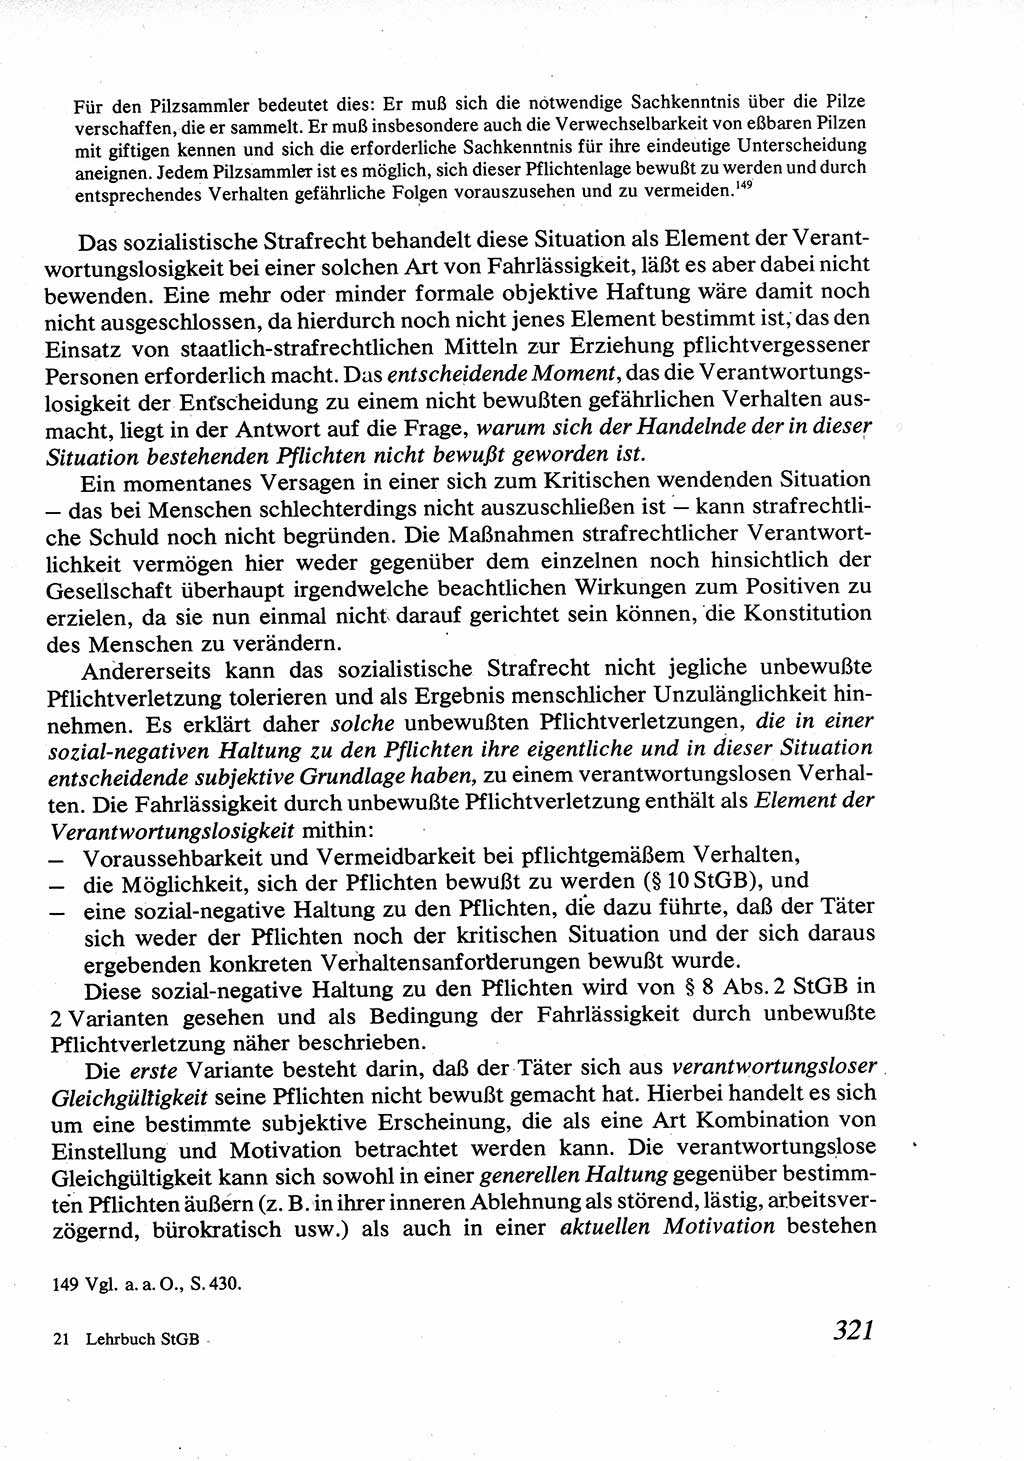 Strafrecht [Deutsche Demokratische Republik (DDR)], Allgemeiner Teil, Lehrbuch 1976, Seite 321 (Strafr. DDR AT Lb. 1976, S. 321)